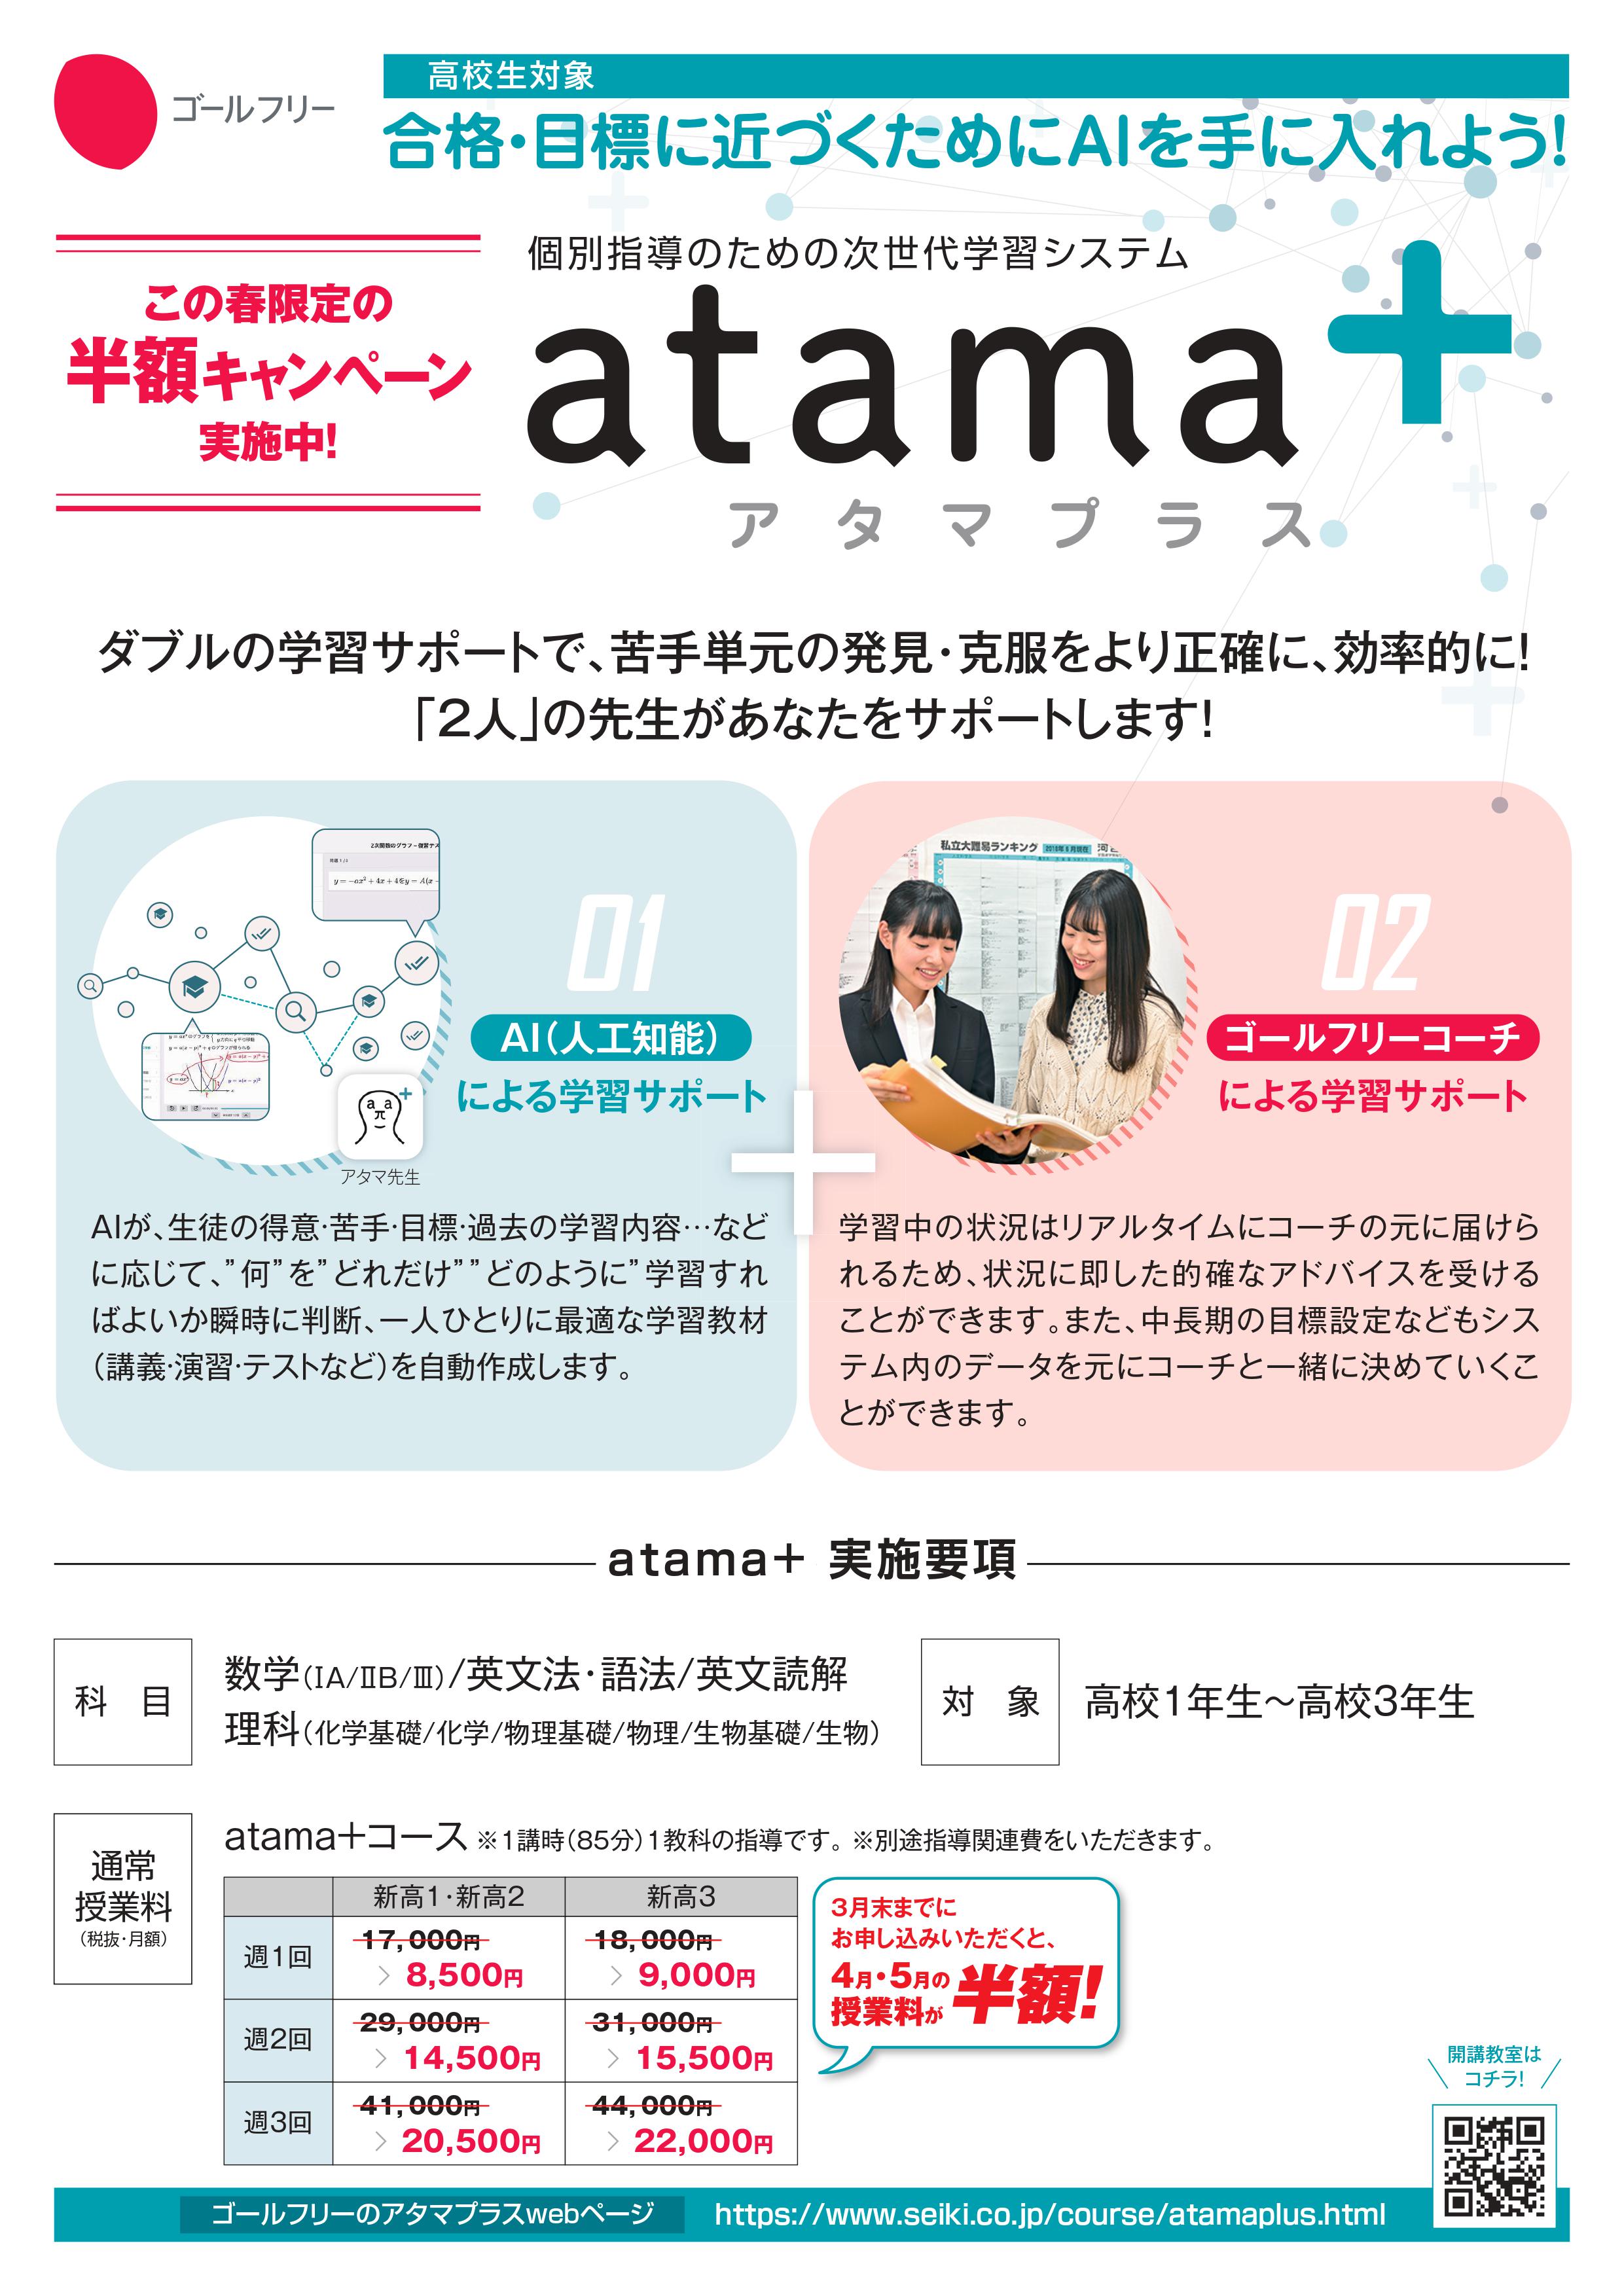 atama+（オモテ）.jpg